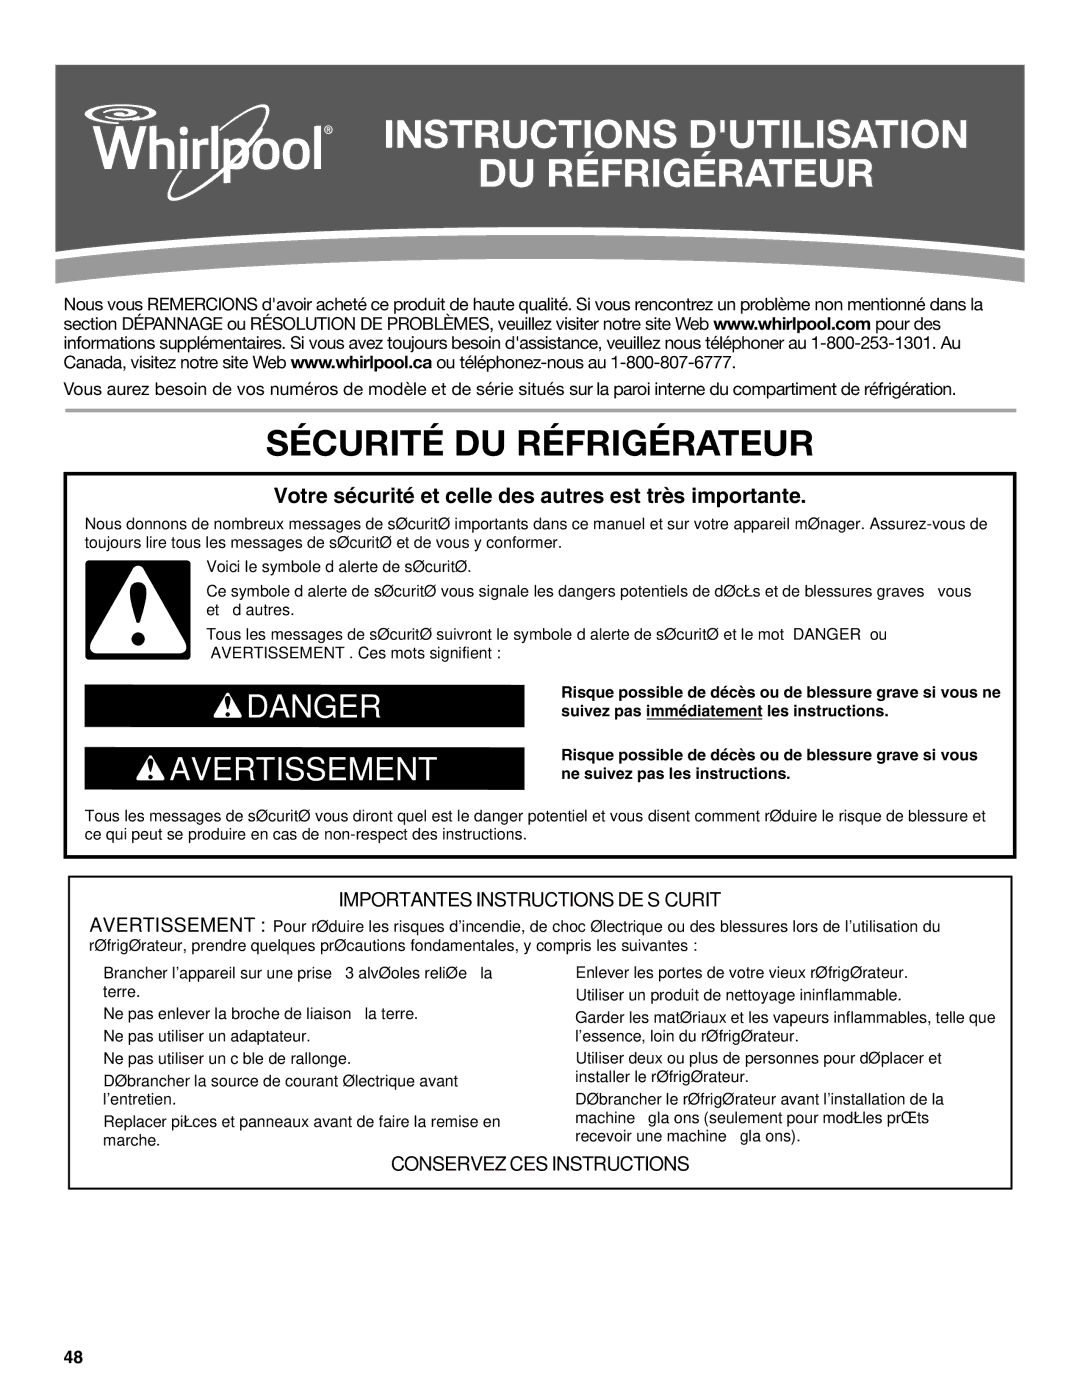 Whirlpool W10551728A installation instructions Instructions Dutilisation DU Réfrigérateur, Sécurité DU Réfrigérateur 